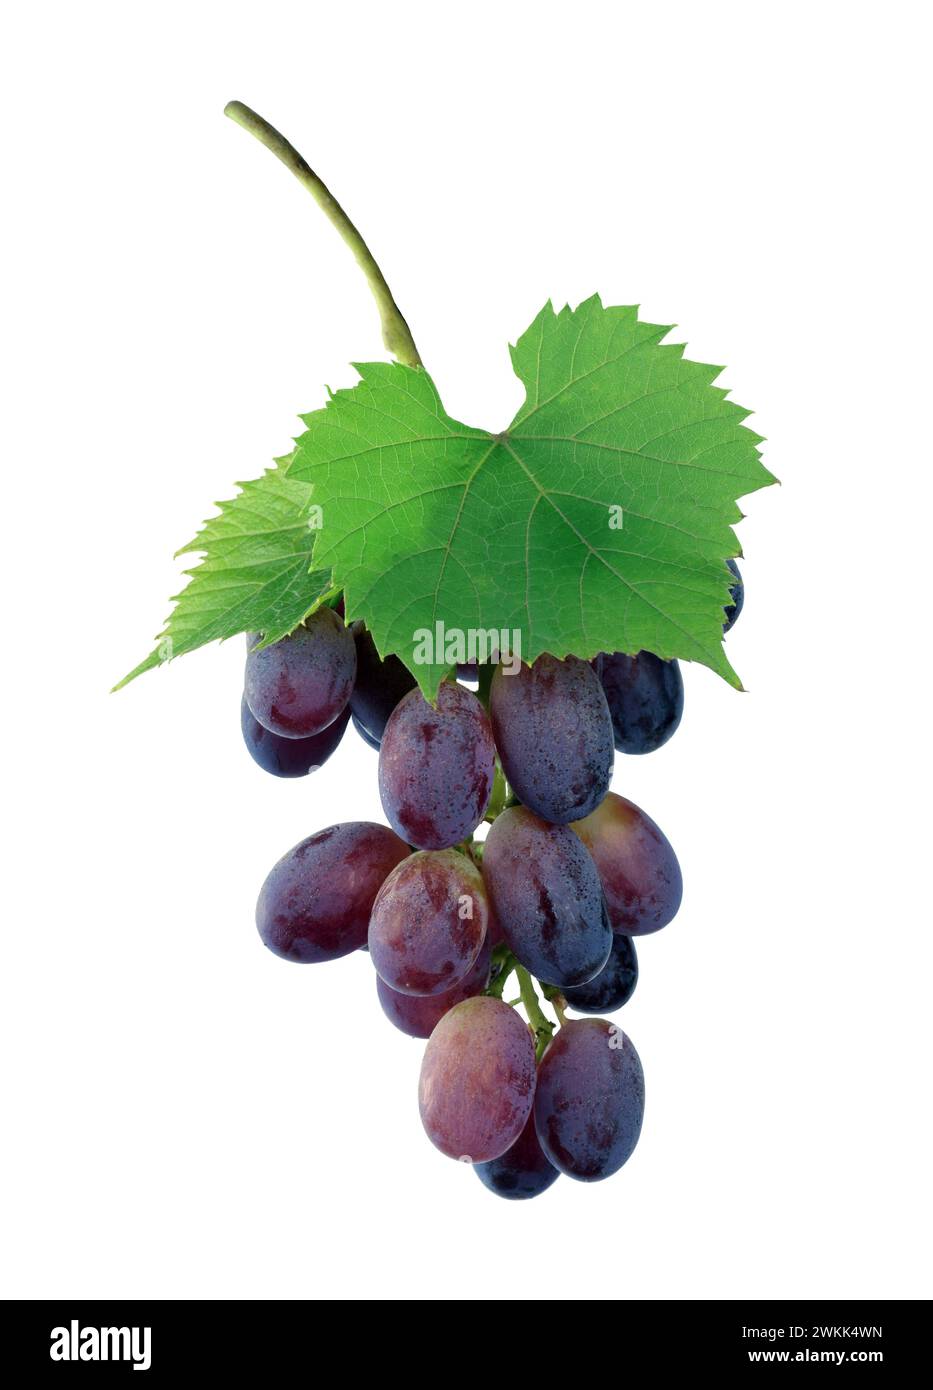 Grappe de raisins avec une feuille de raisin isolée sur un fond blanc. Baies. Fruits. Élément de conception pour étiquettes de vin ou de jus, viticulture et viniculture Banque D'Images